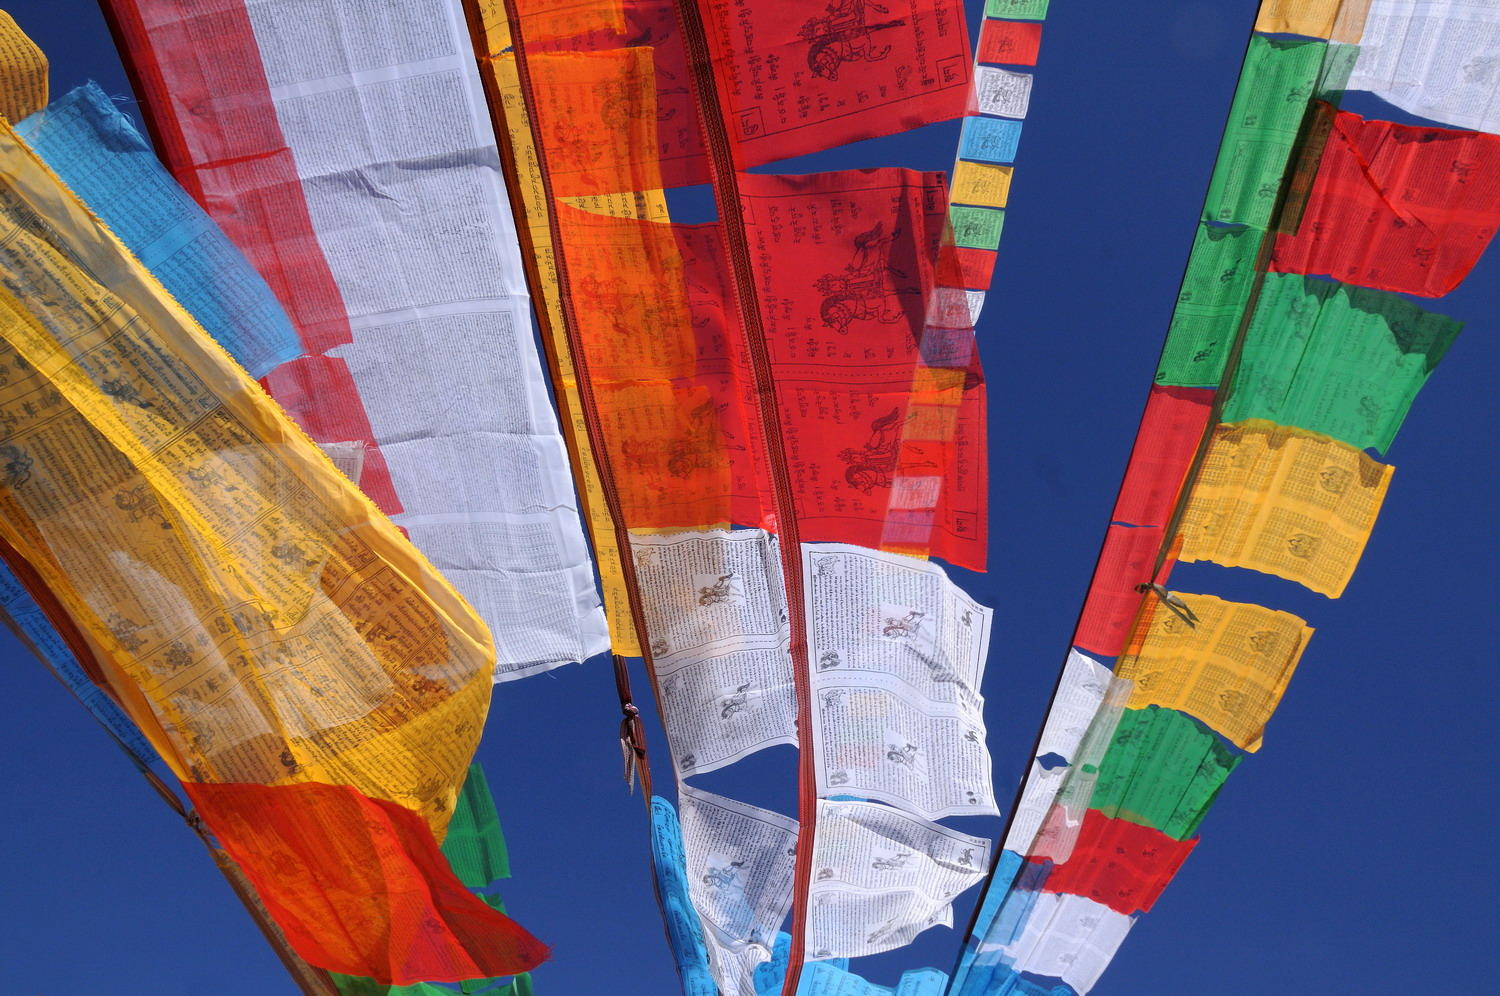 DSC_0528A1 - Tibetan Prayer Flags